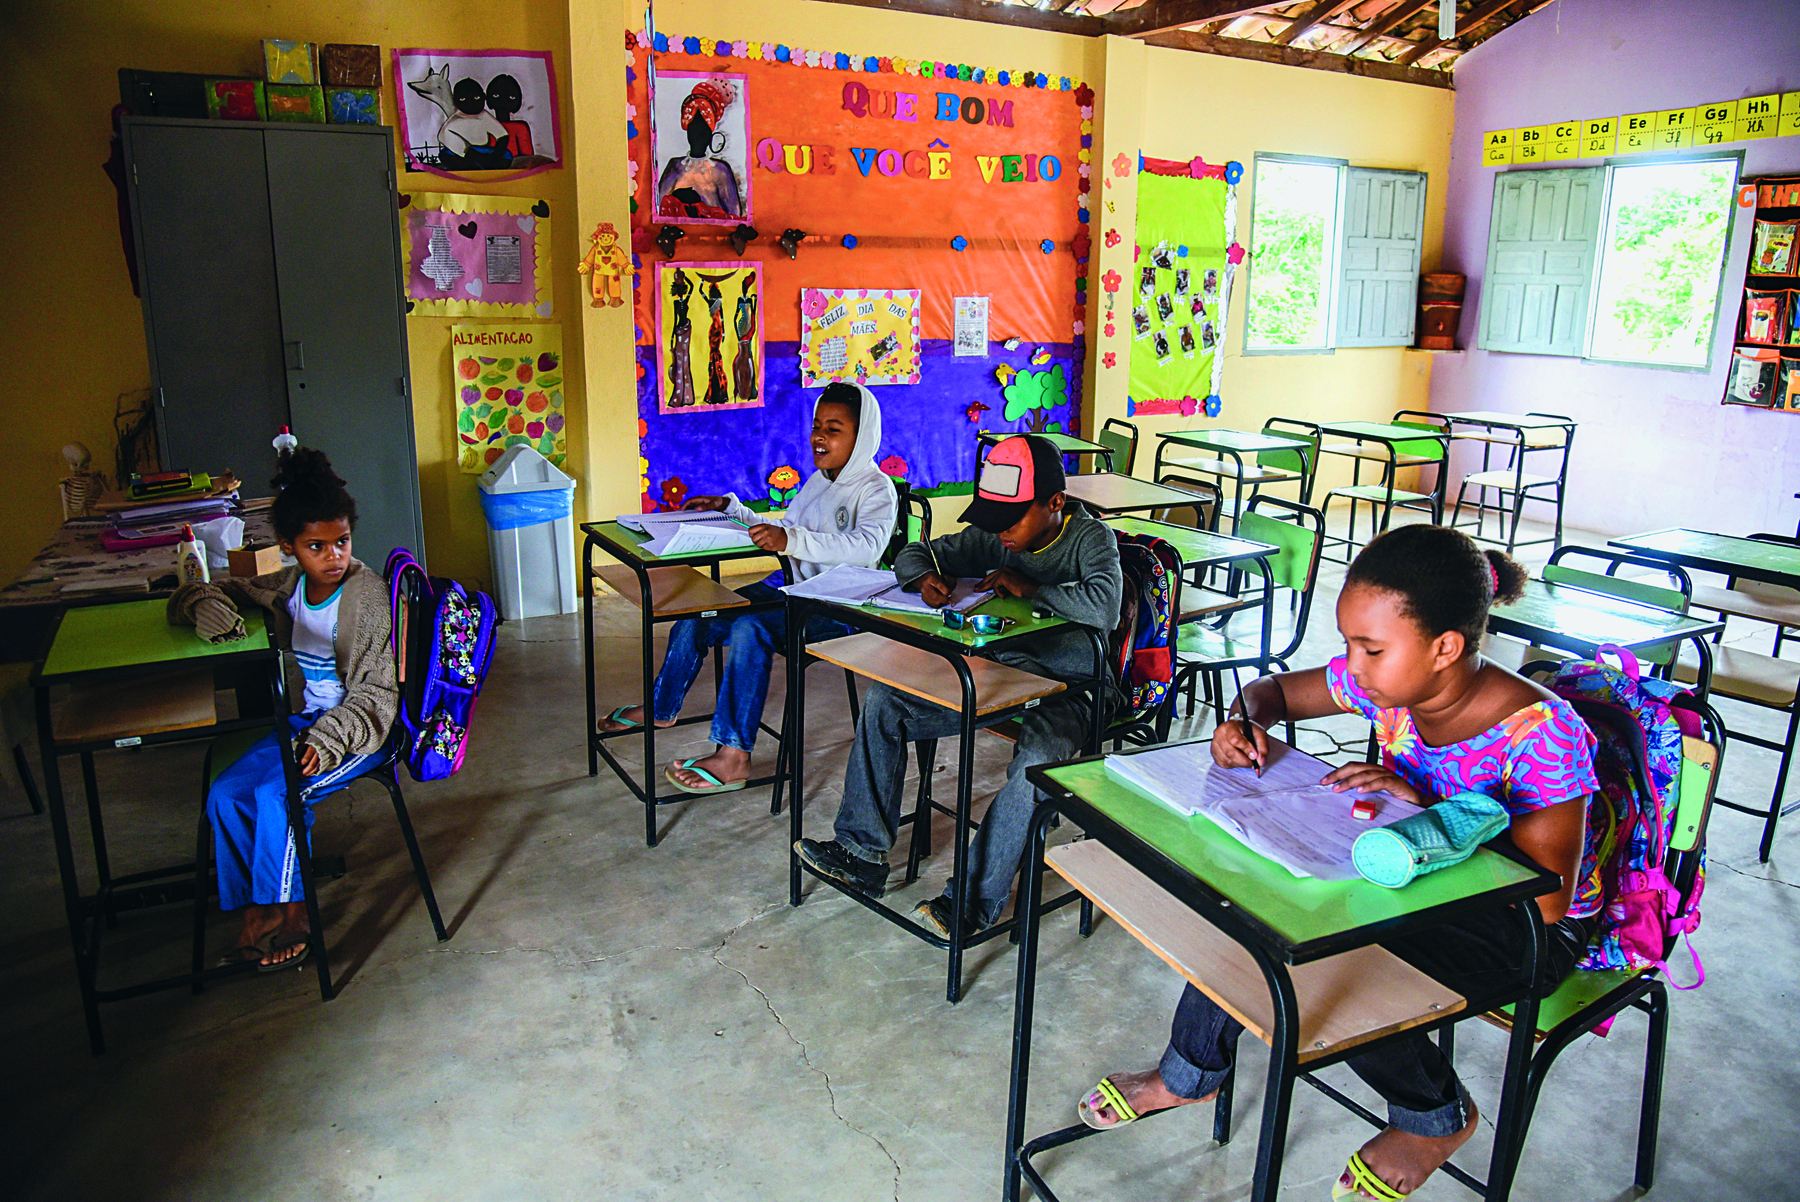 Fotografia. Meninos e meninas em uma sala de aula, sentados em carteiras escolares. As mochilas estão penduradas nas cadeiras. Ao fundo, parede decorada com vários cartazes coloridos.